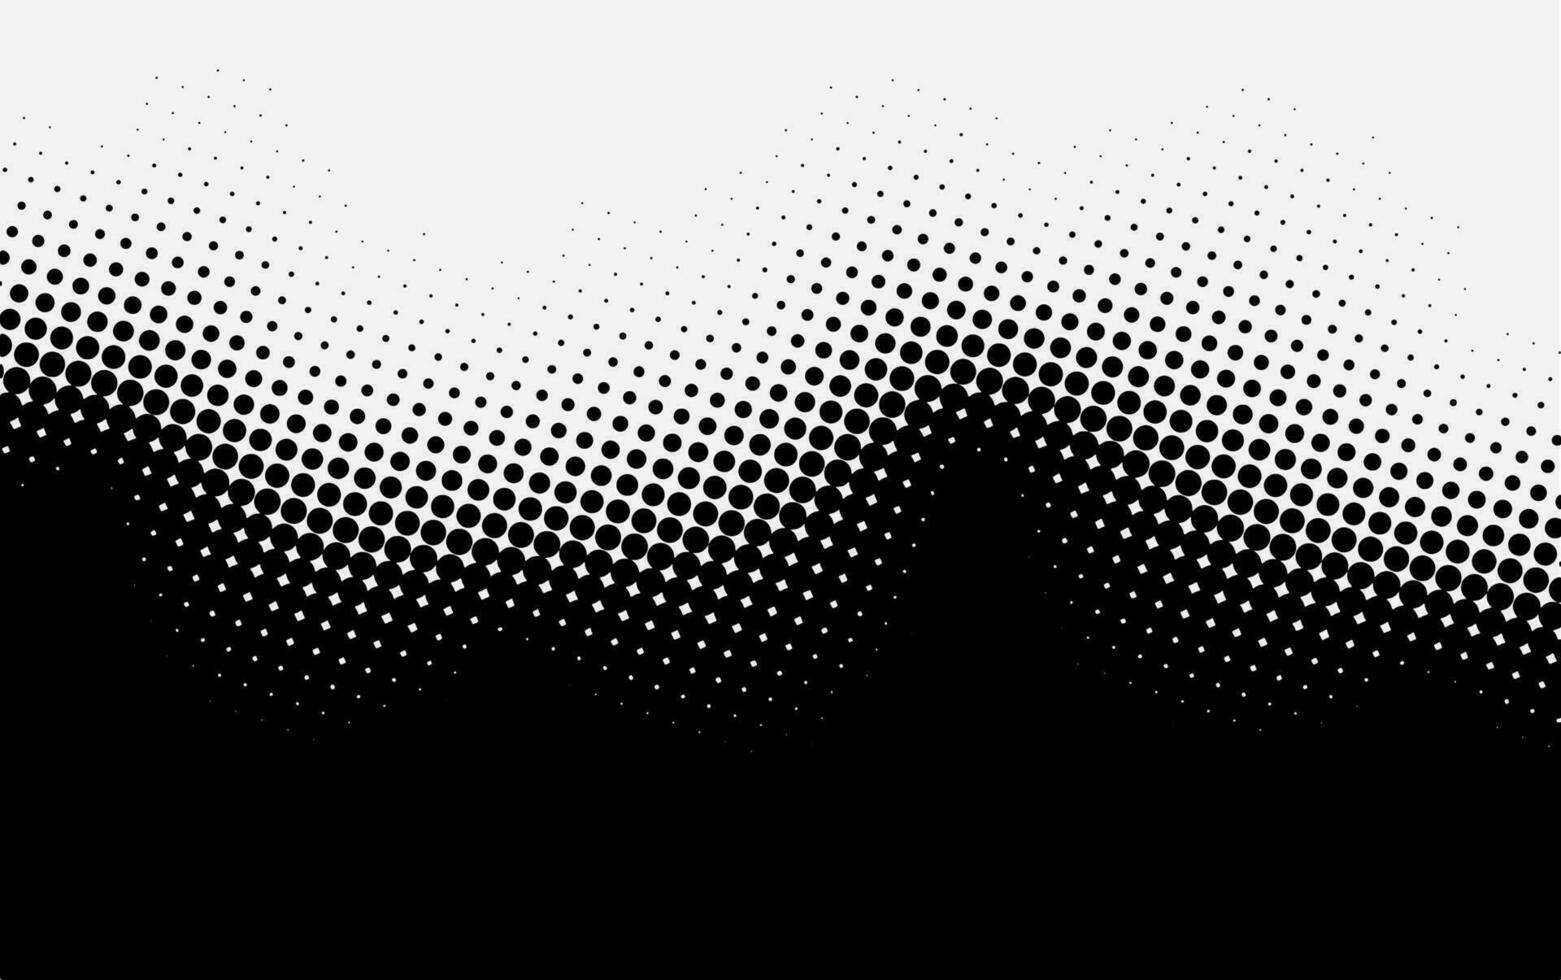 punt patroon met halftone effect. zwart wit knal kunst verloop. golvend achtergrond met stippen. vector illustratie